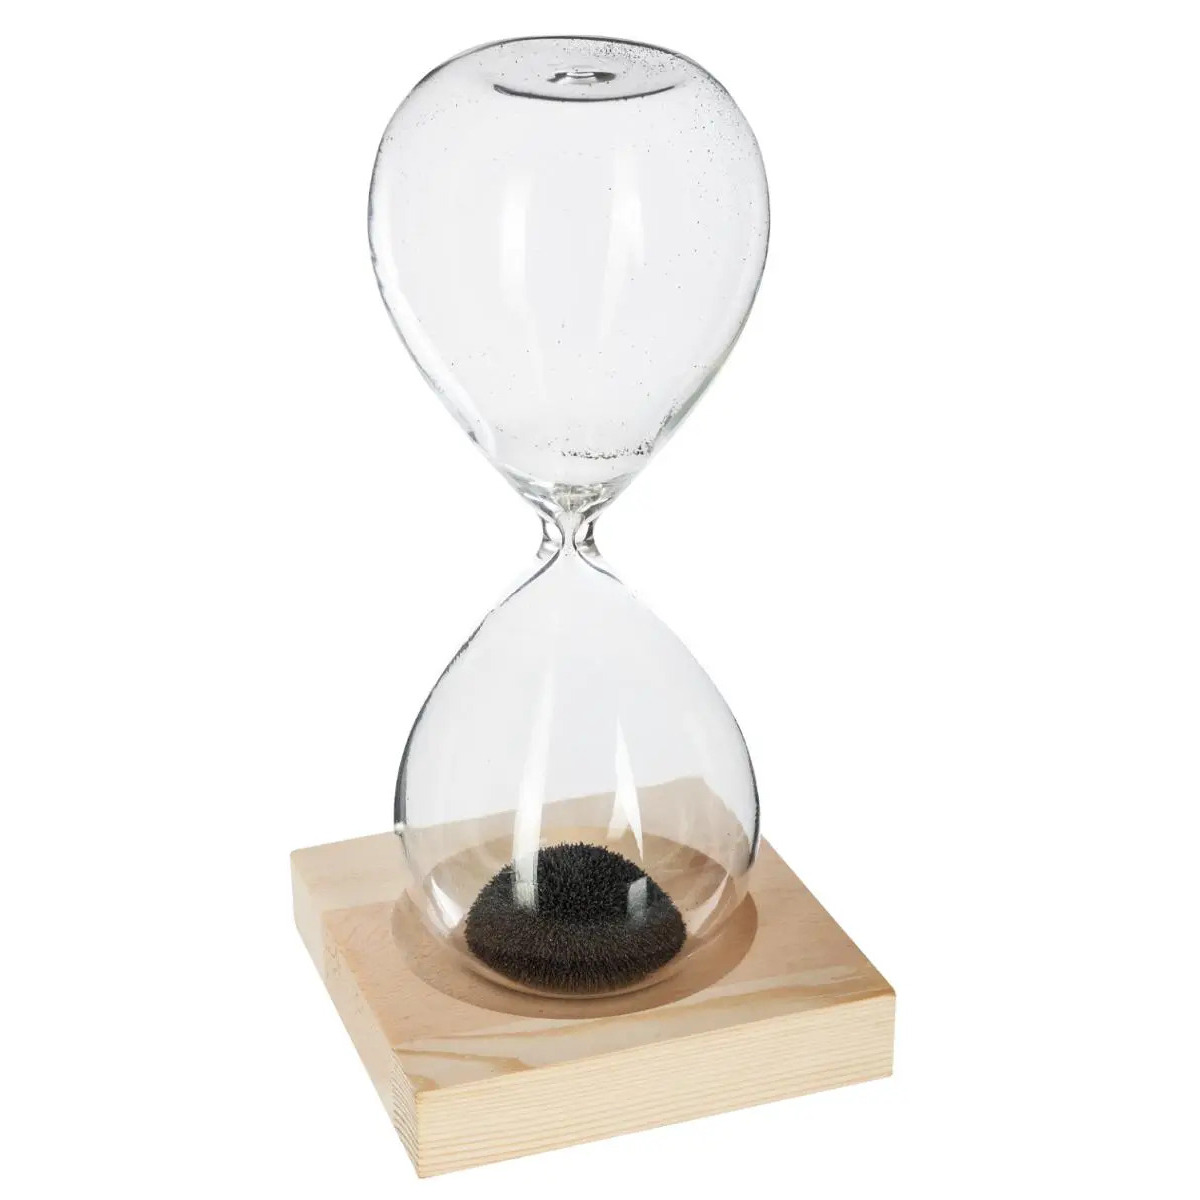 Zandloper cilinder - decoratie of tijdsmeting - 1 minuten zwart zand - H15 cm - glas/hout -